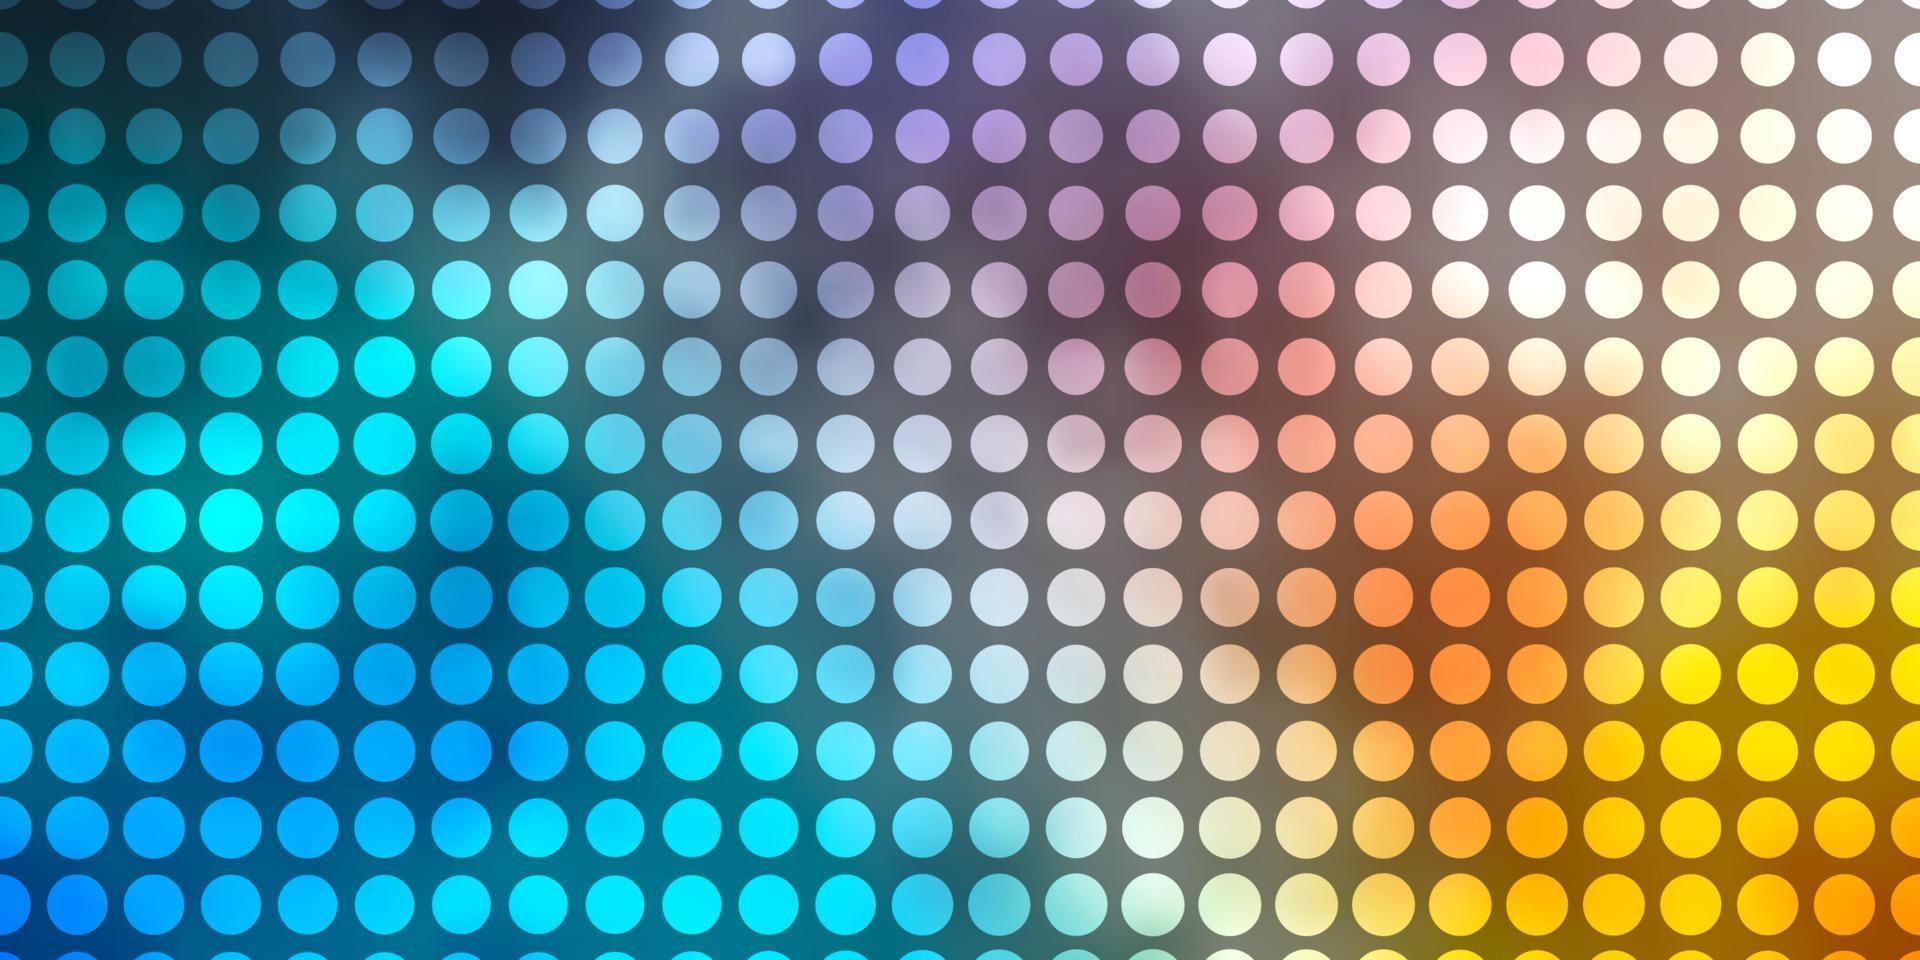 ljusblå, gul vektorbakgrund med cirklar. vektor